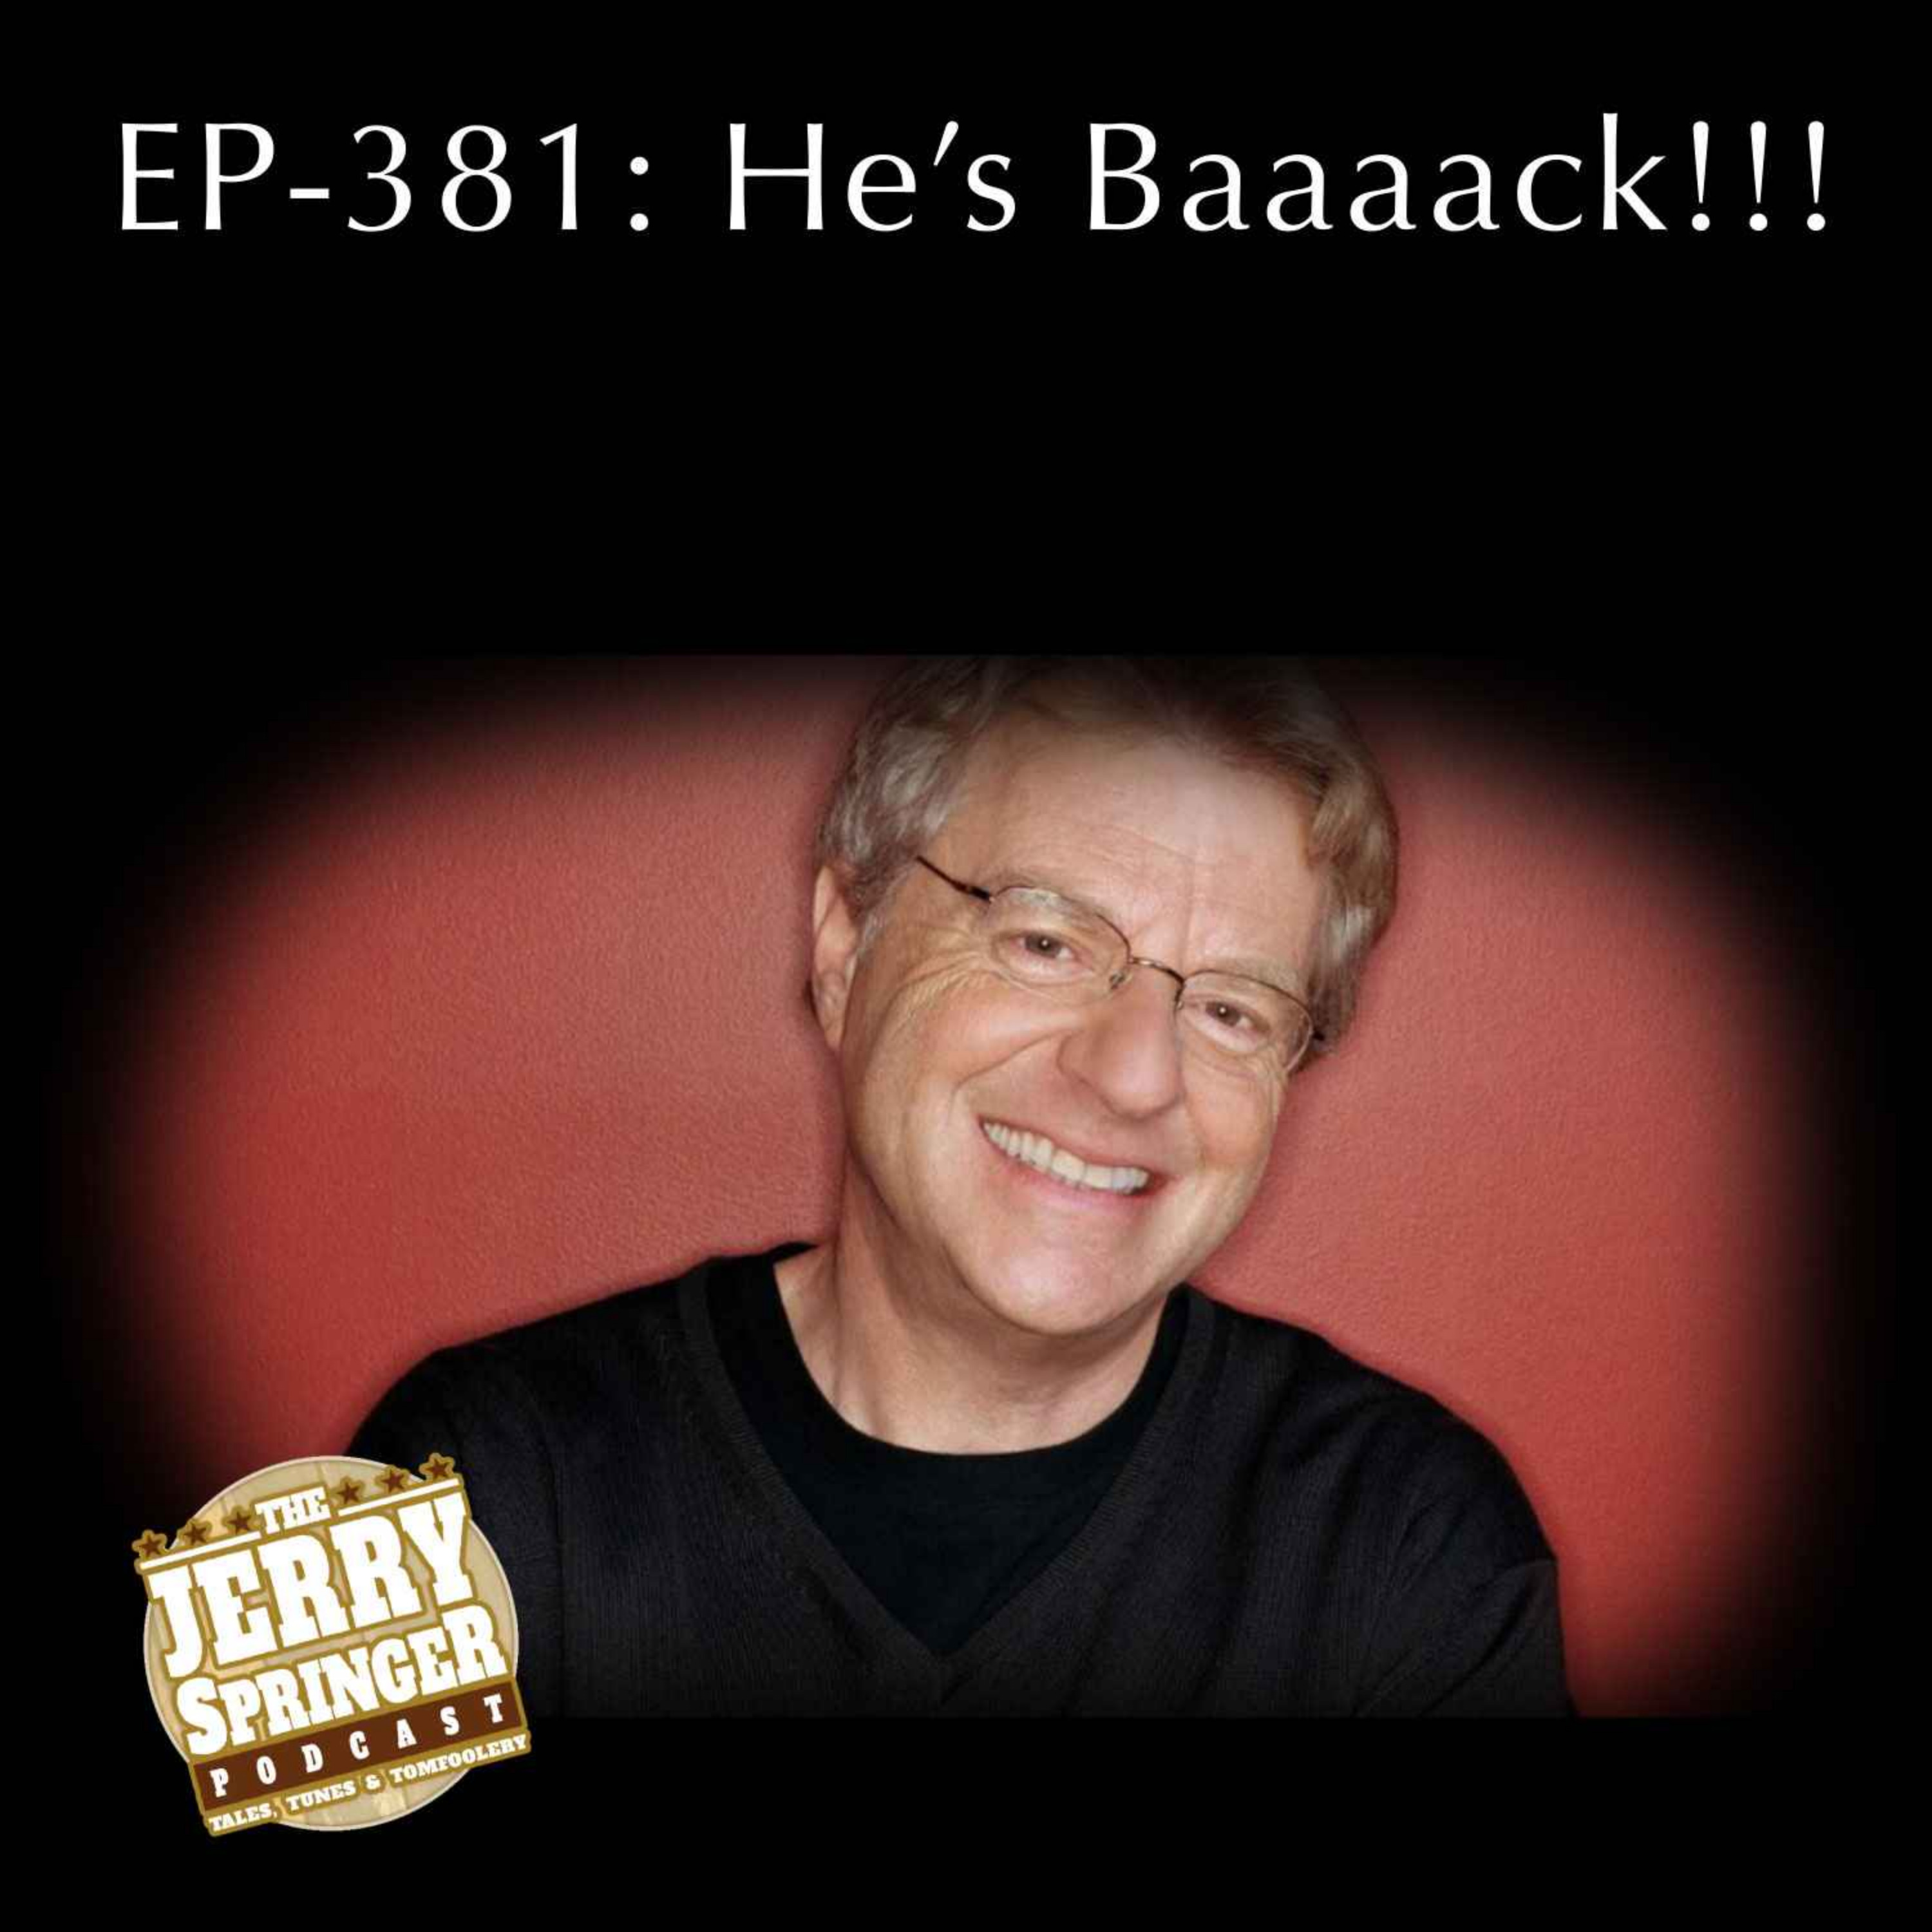 He’s Baaaaack! EP -381